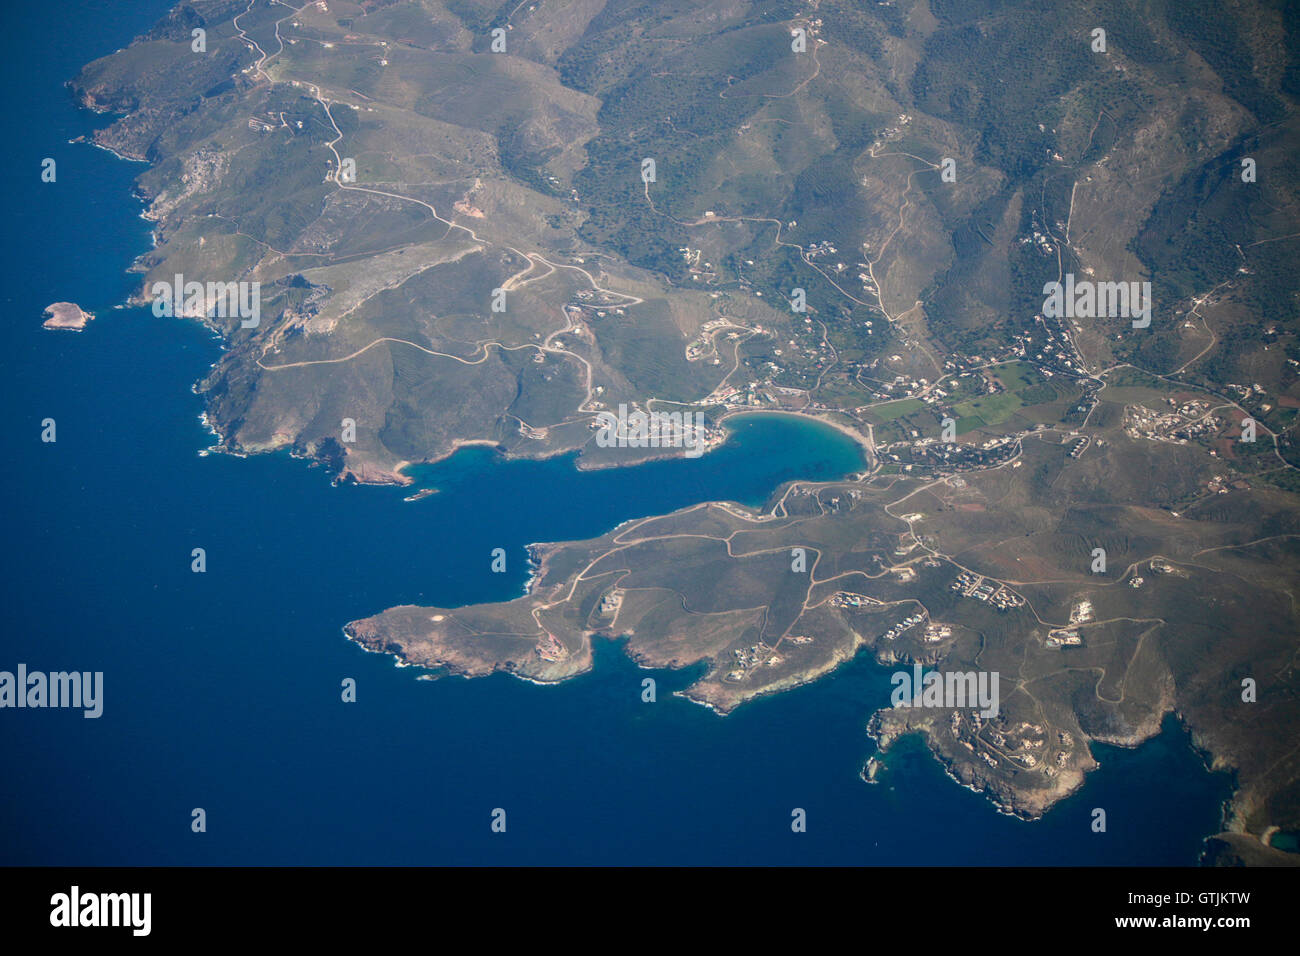 Flugzeug Aus einem Blick auf eine griechische Kuestenlandschaft. Foto de stock